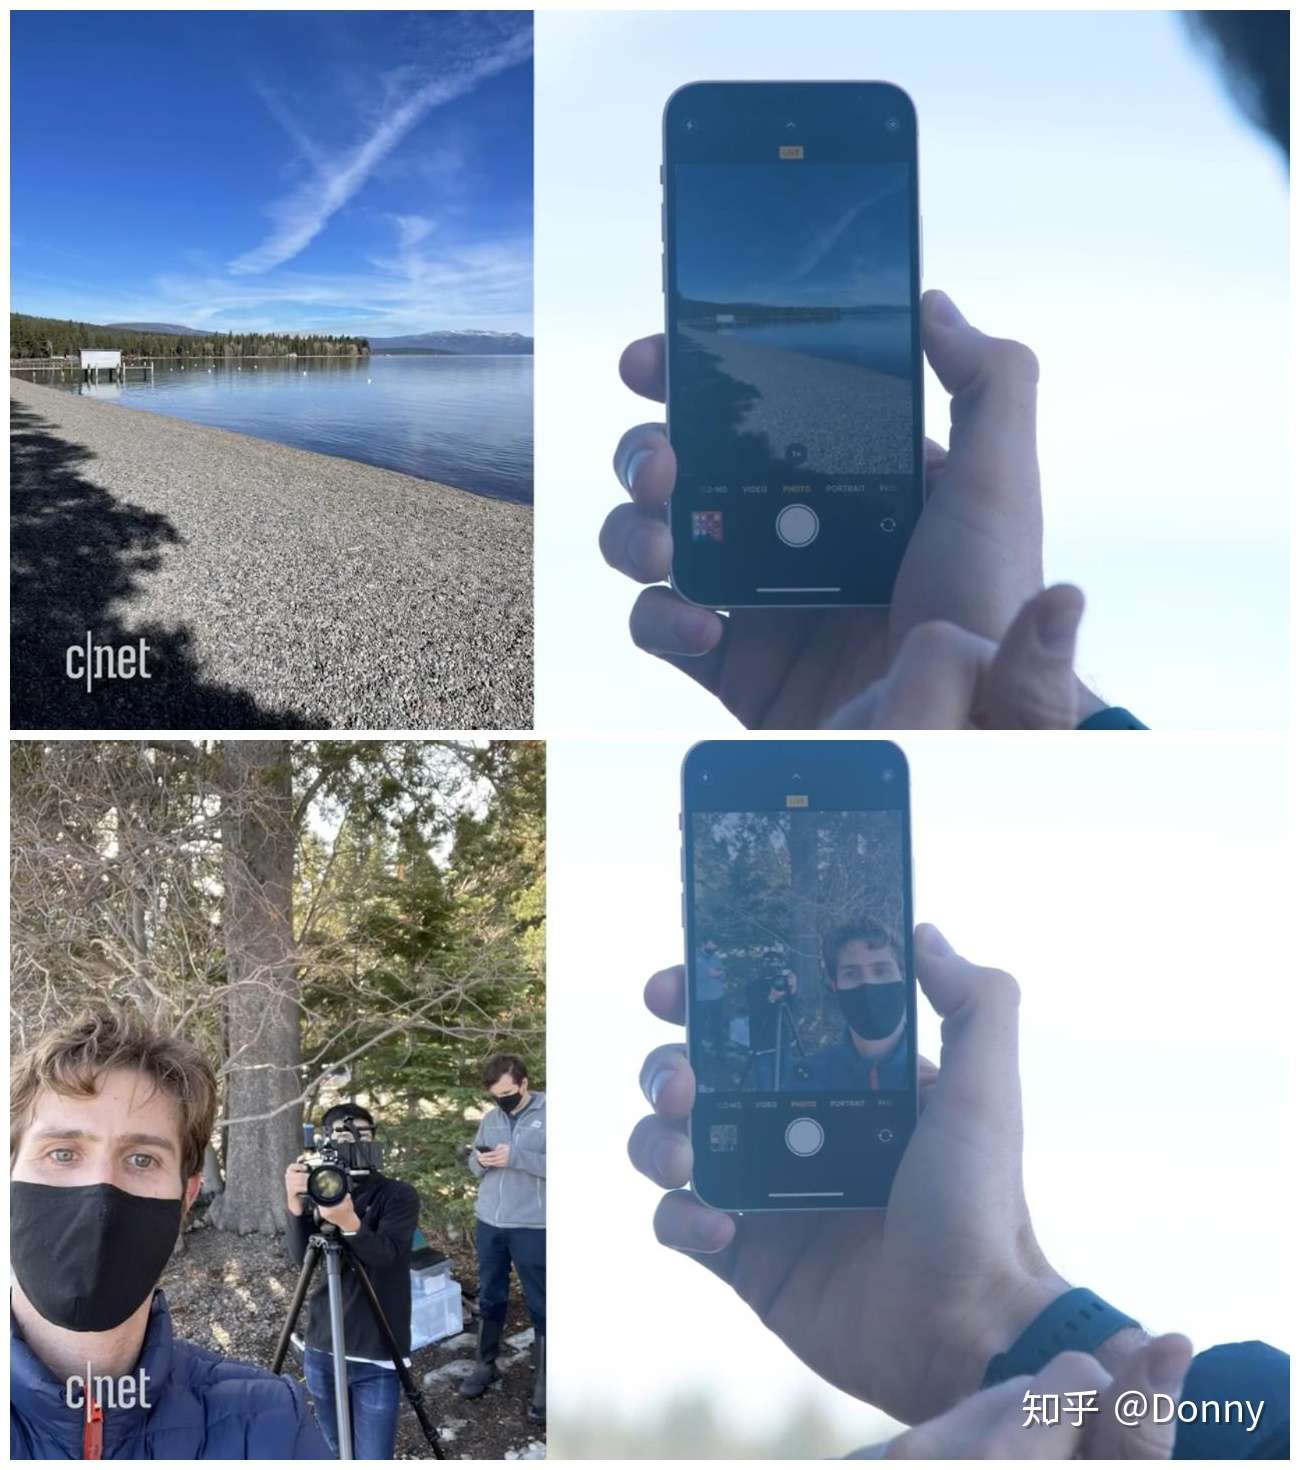 Iphone 12防水到底什么水平 他们把手机丢湖底做了测试 知乎